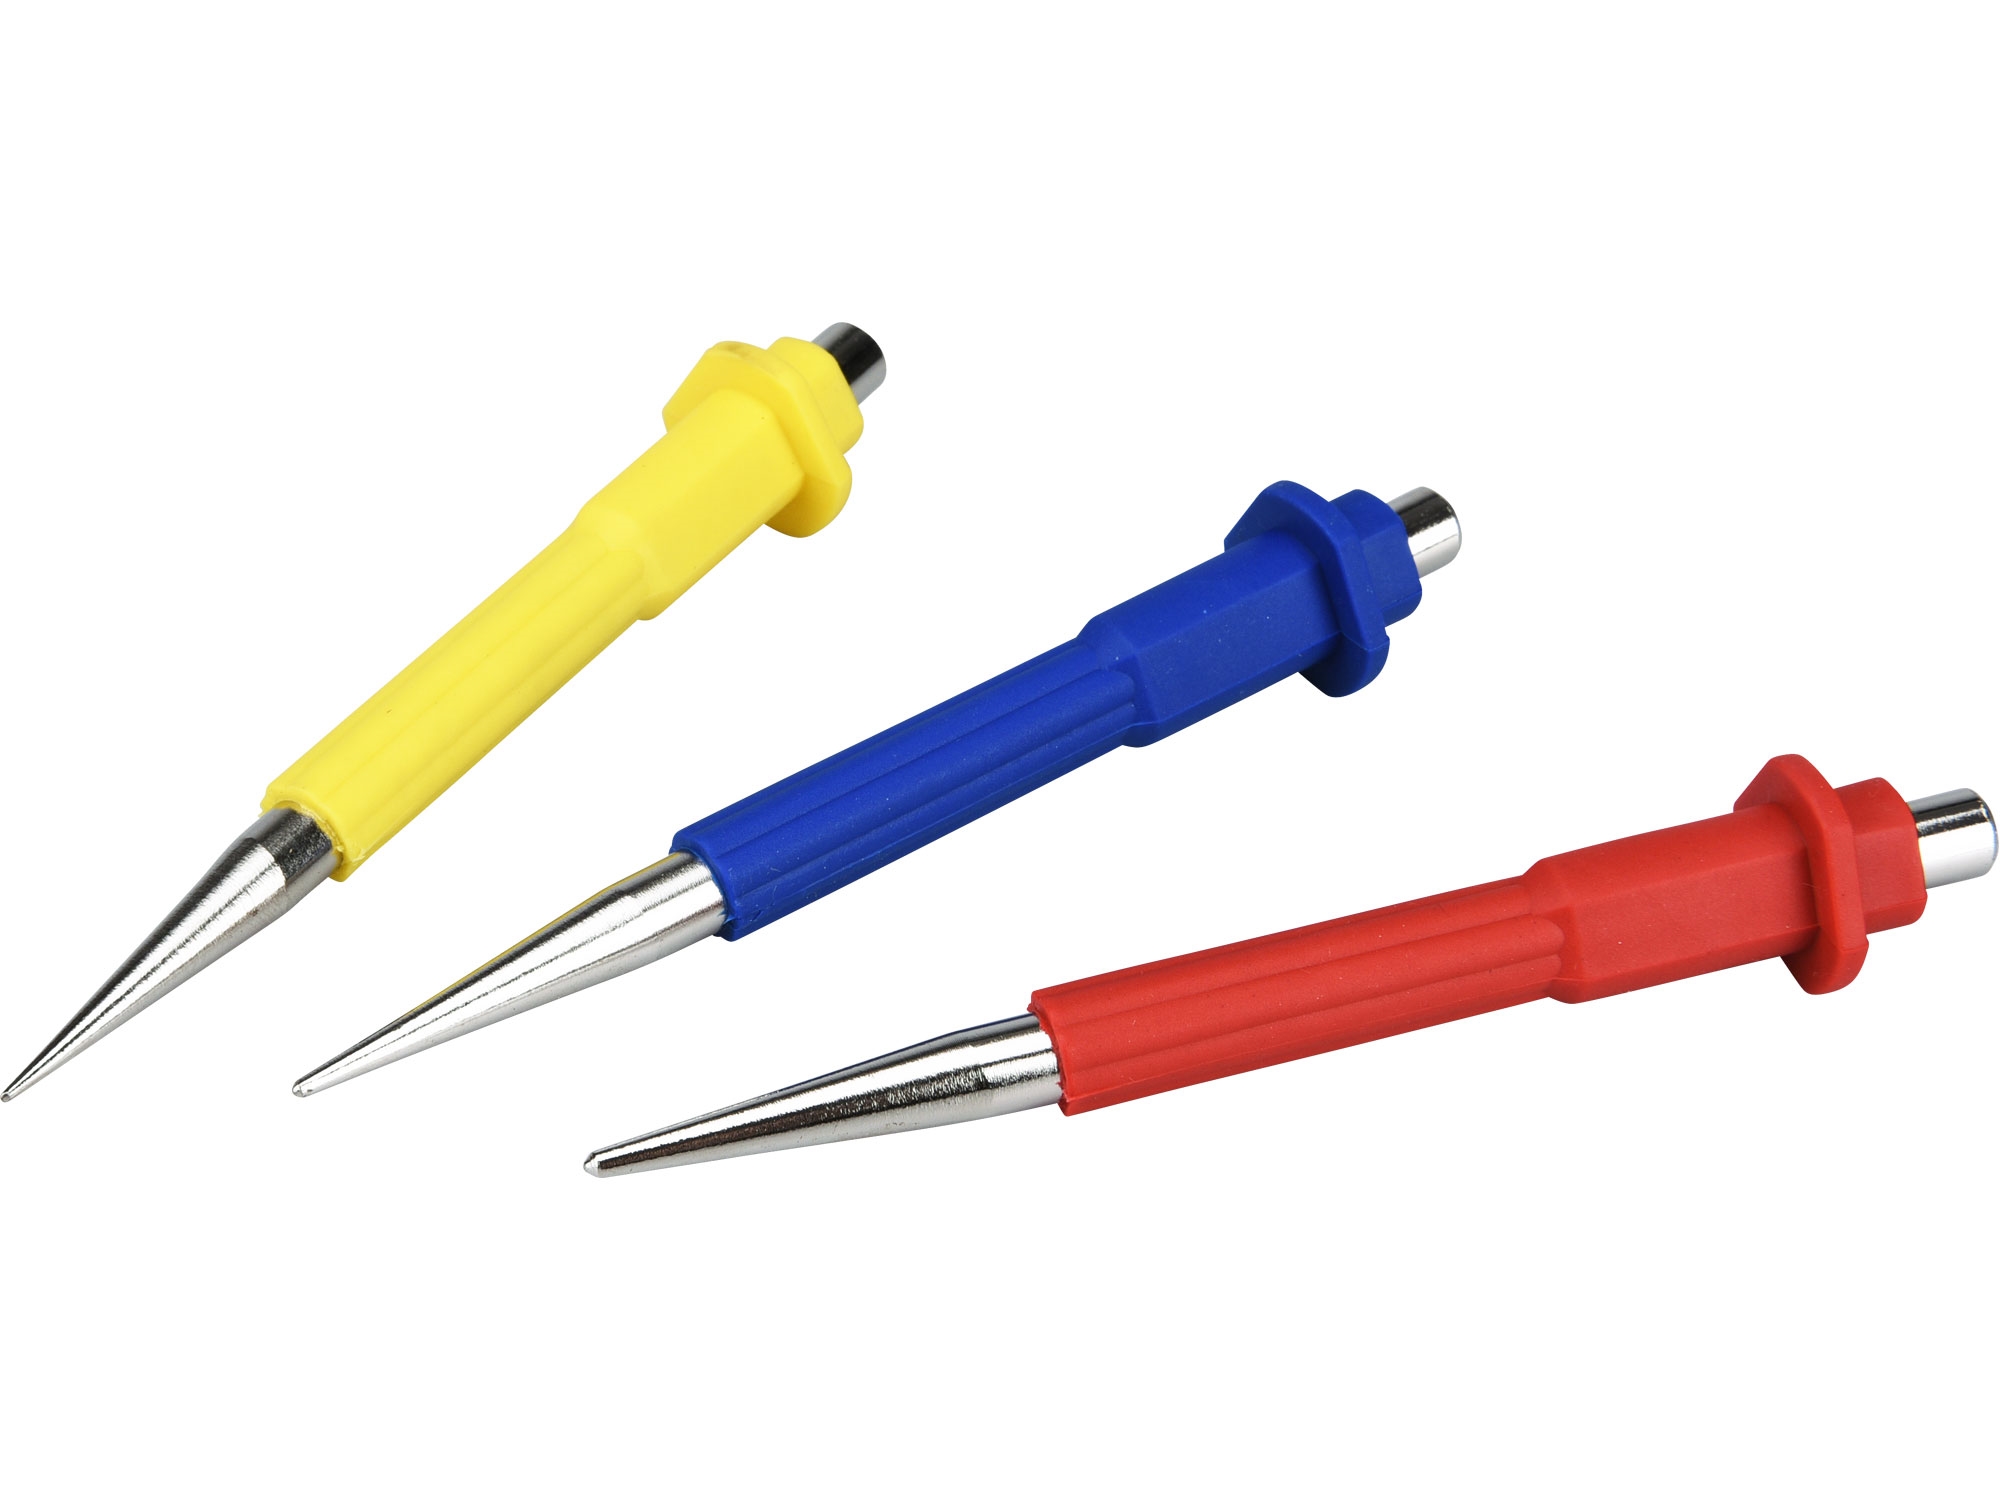 důlčíky, sada 3ks, 0,8-1,5-2,5mm, CrV, EXTOL PREMIUM 8801810